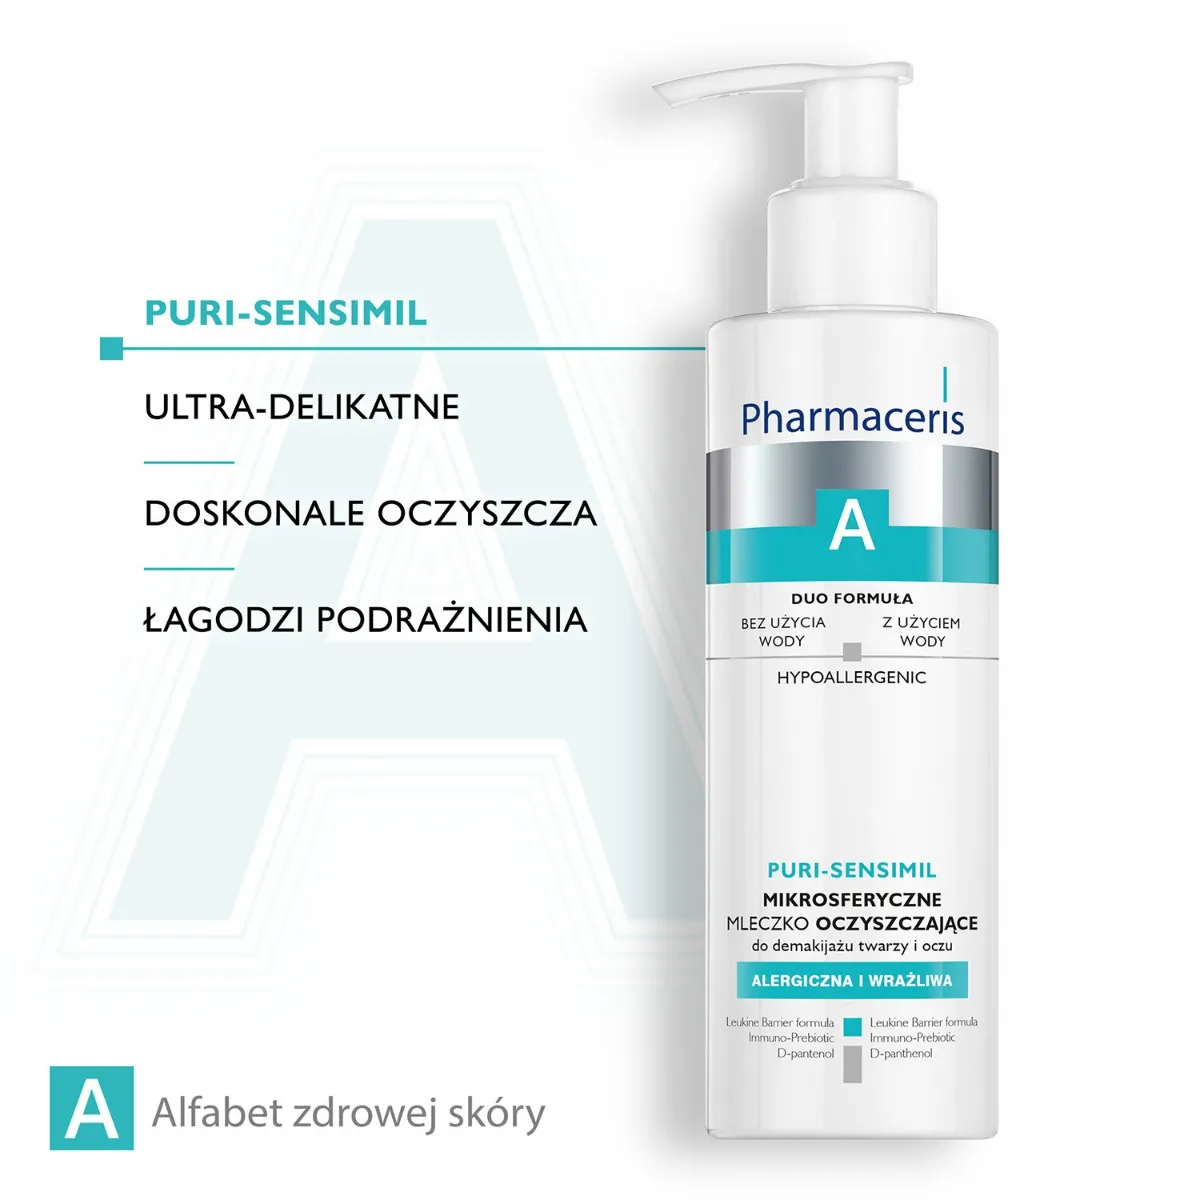 Pharmaceris A Puri-Sensimil, mikrosferyczne mleczko oczyszczające do demakijażu twarzy i oczu, 190 ml 